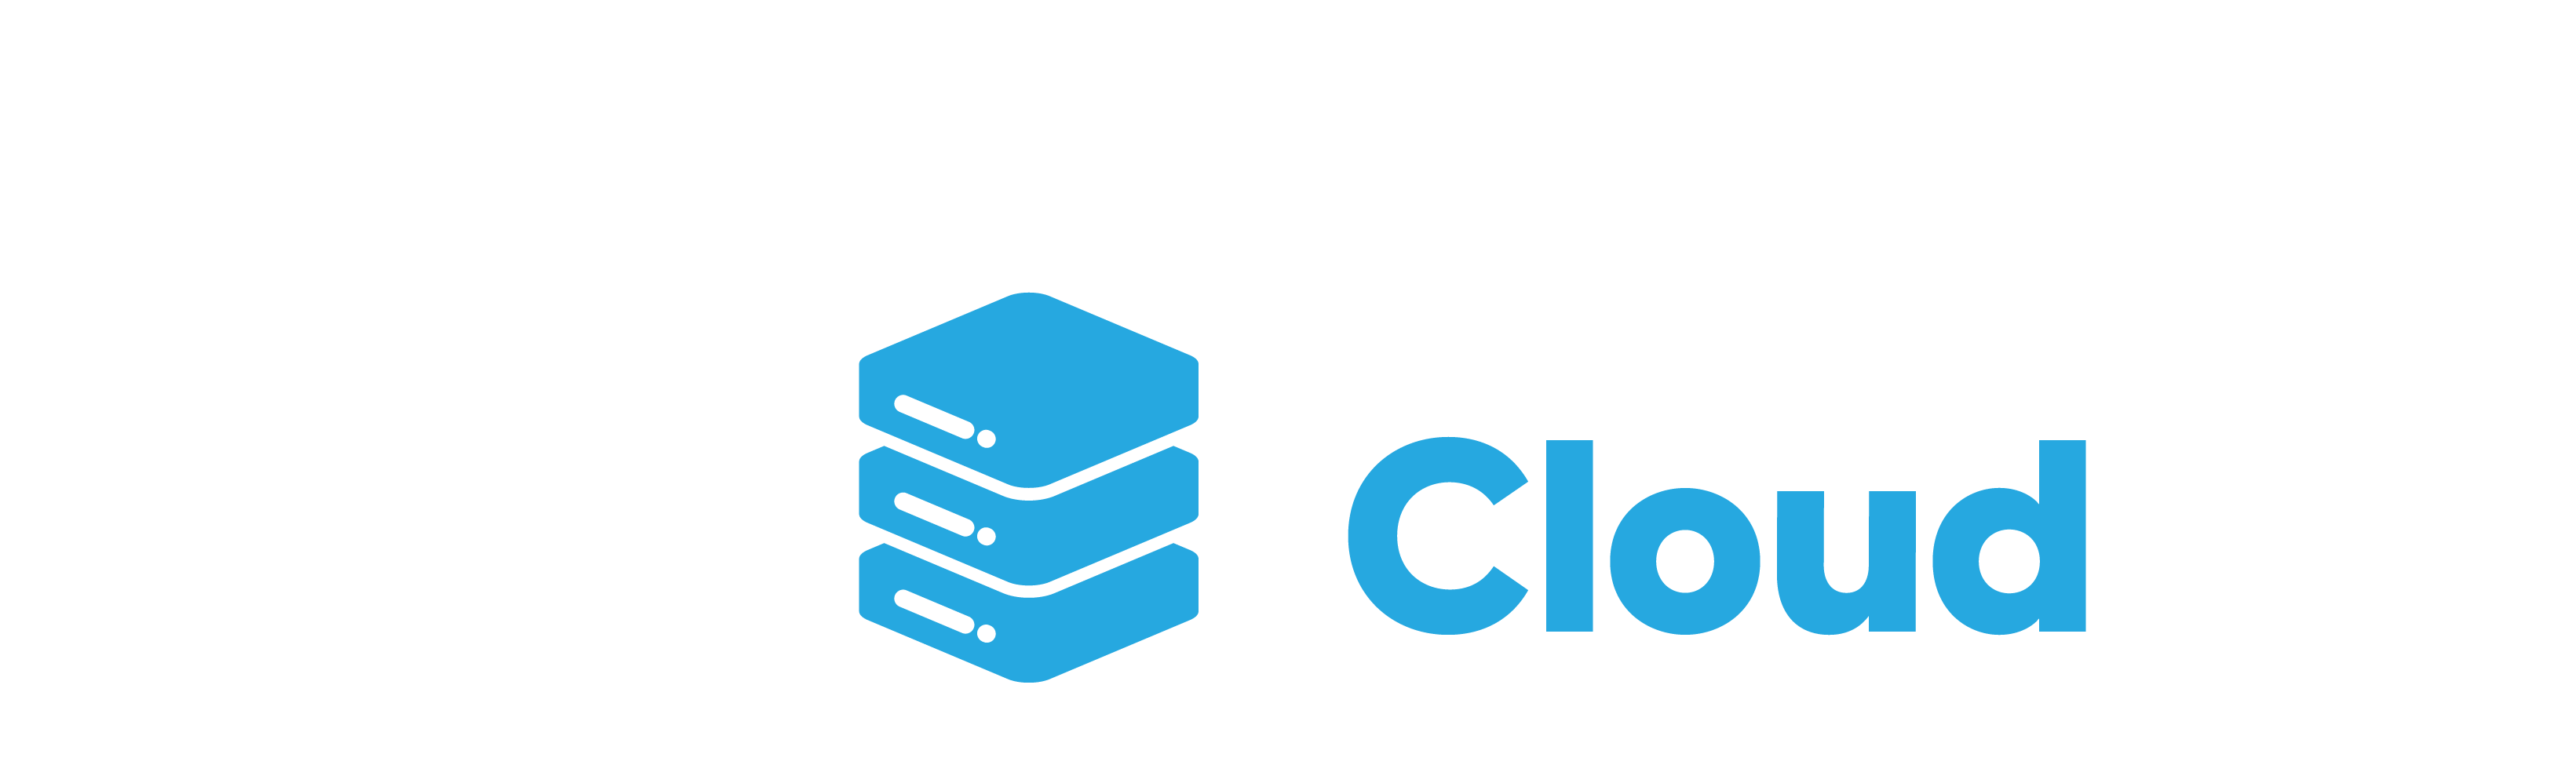 Megabit Cloud Rwanda